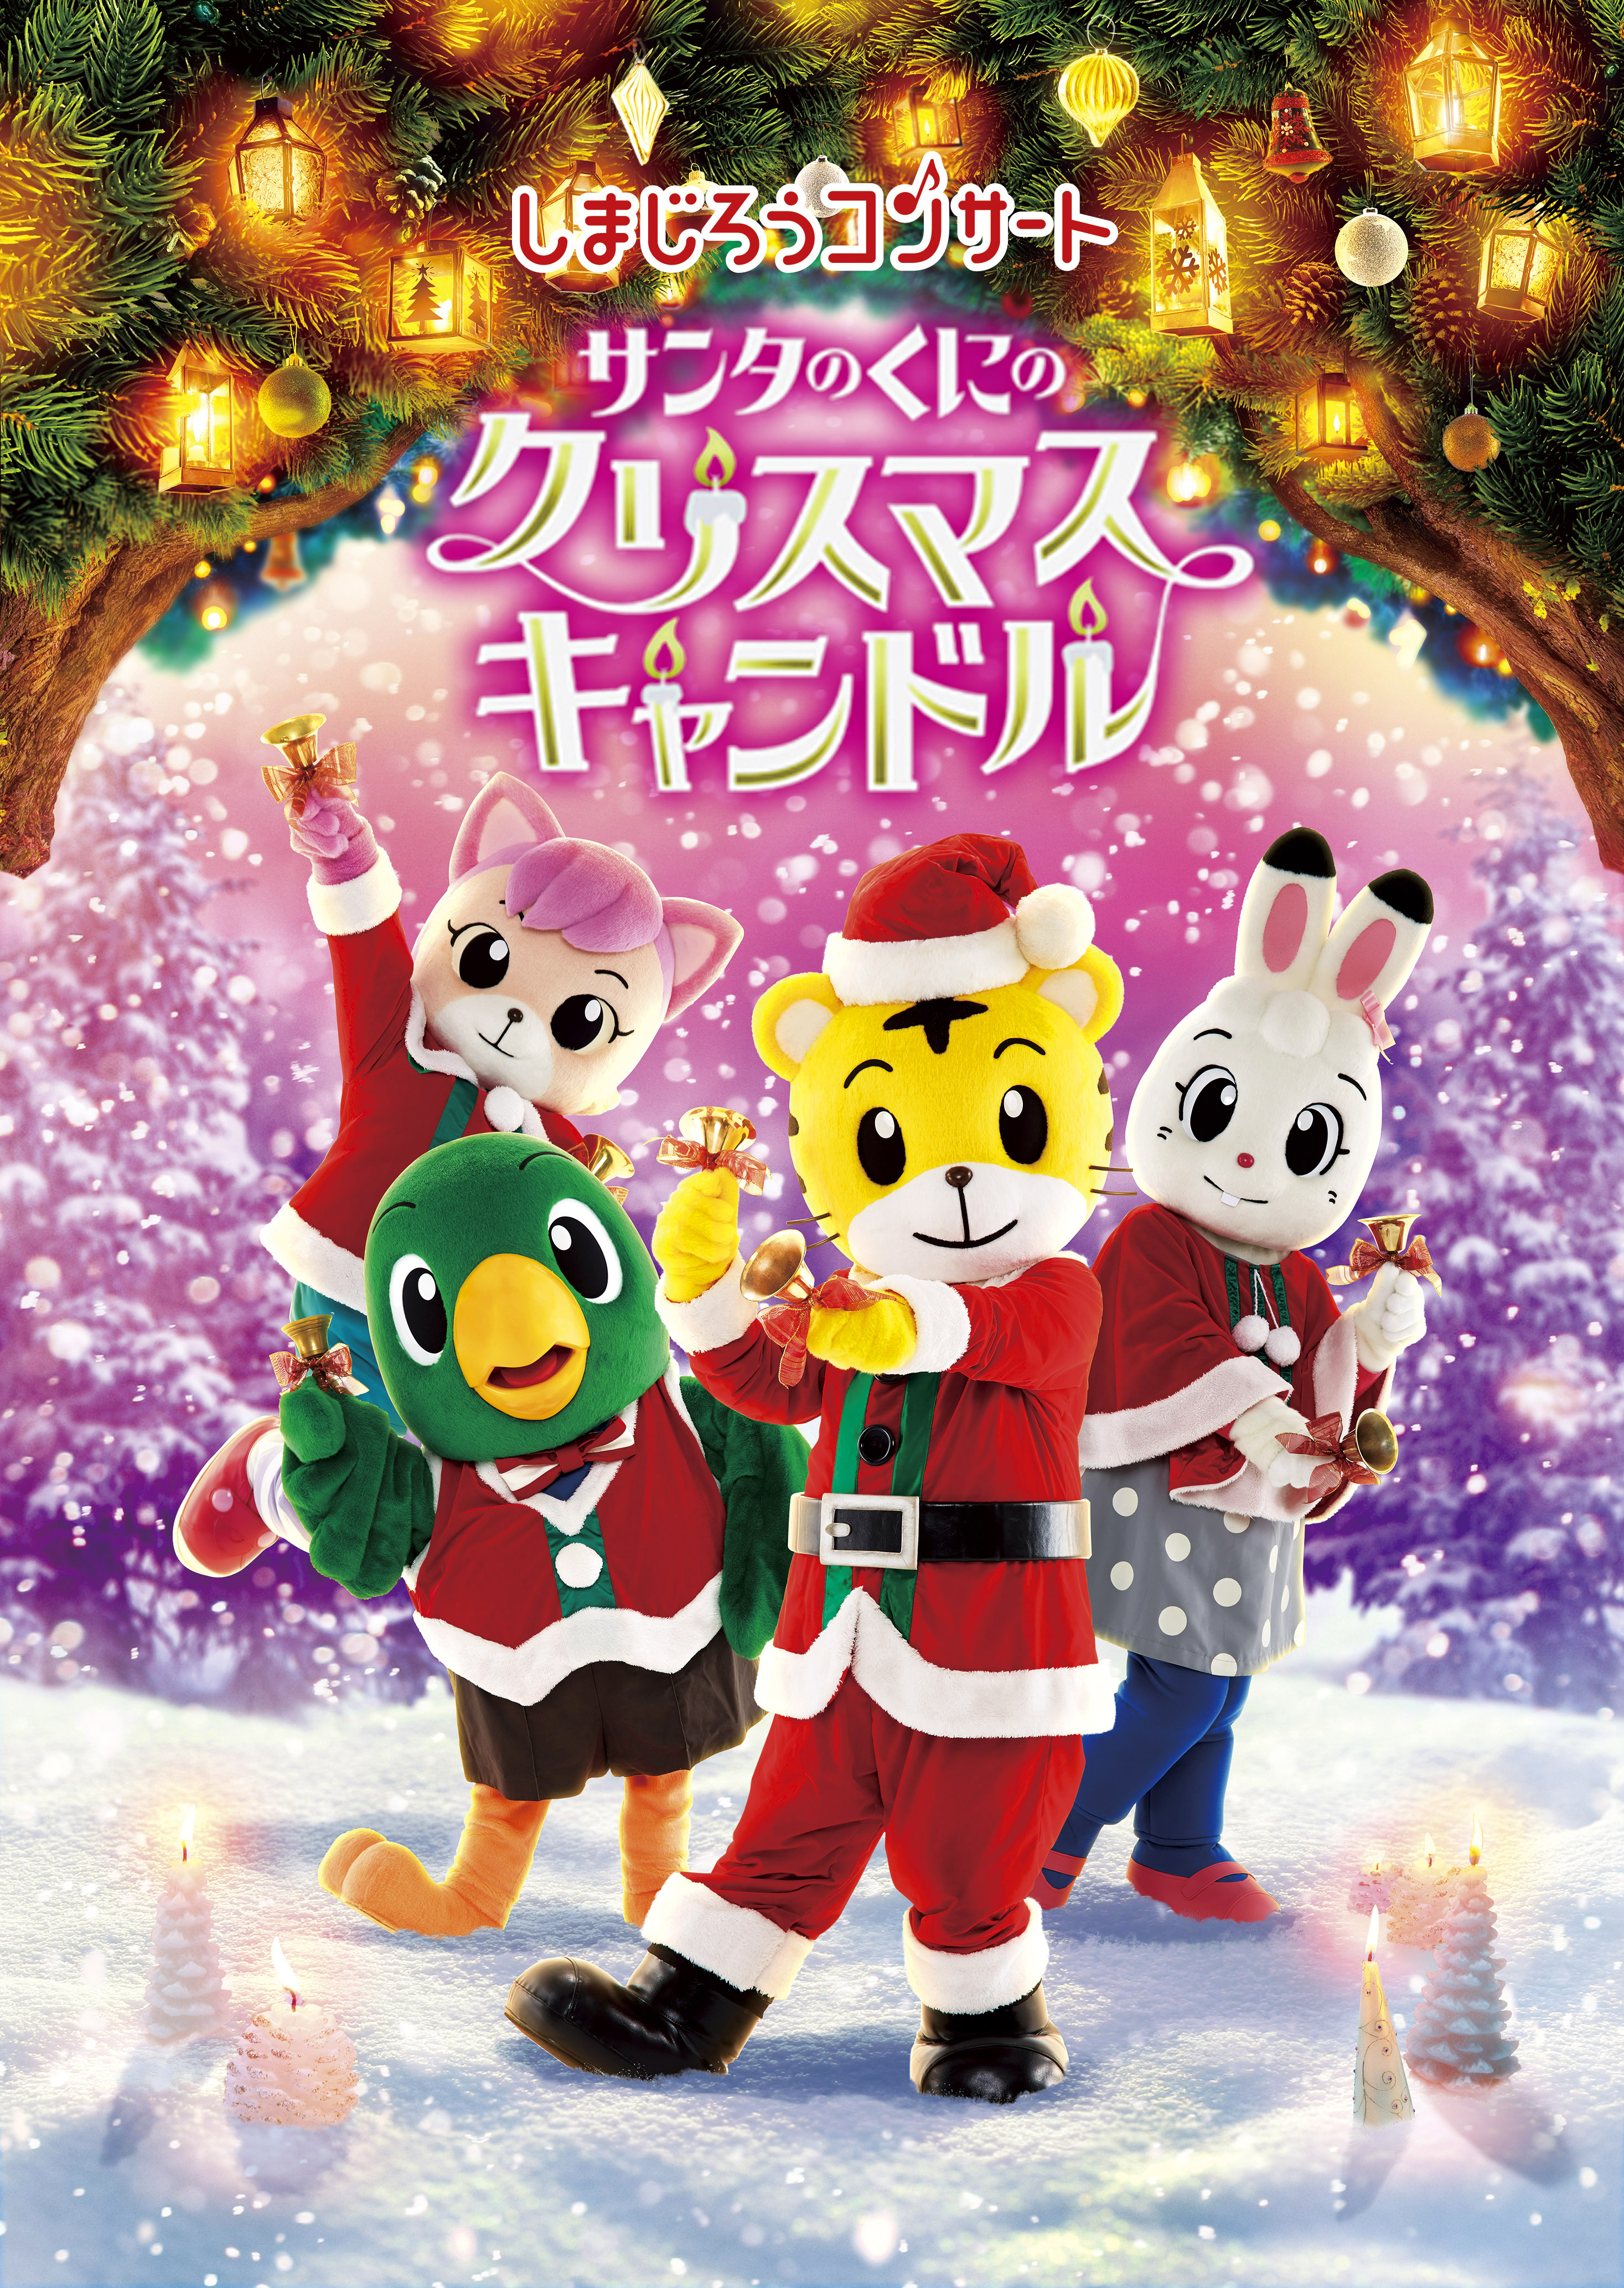 しまじろうコンサート サンタのくにの クリスマスキャンドル イベント情報 札幌市民交流プラザ